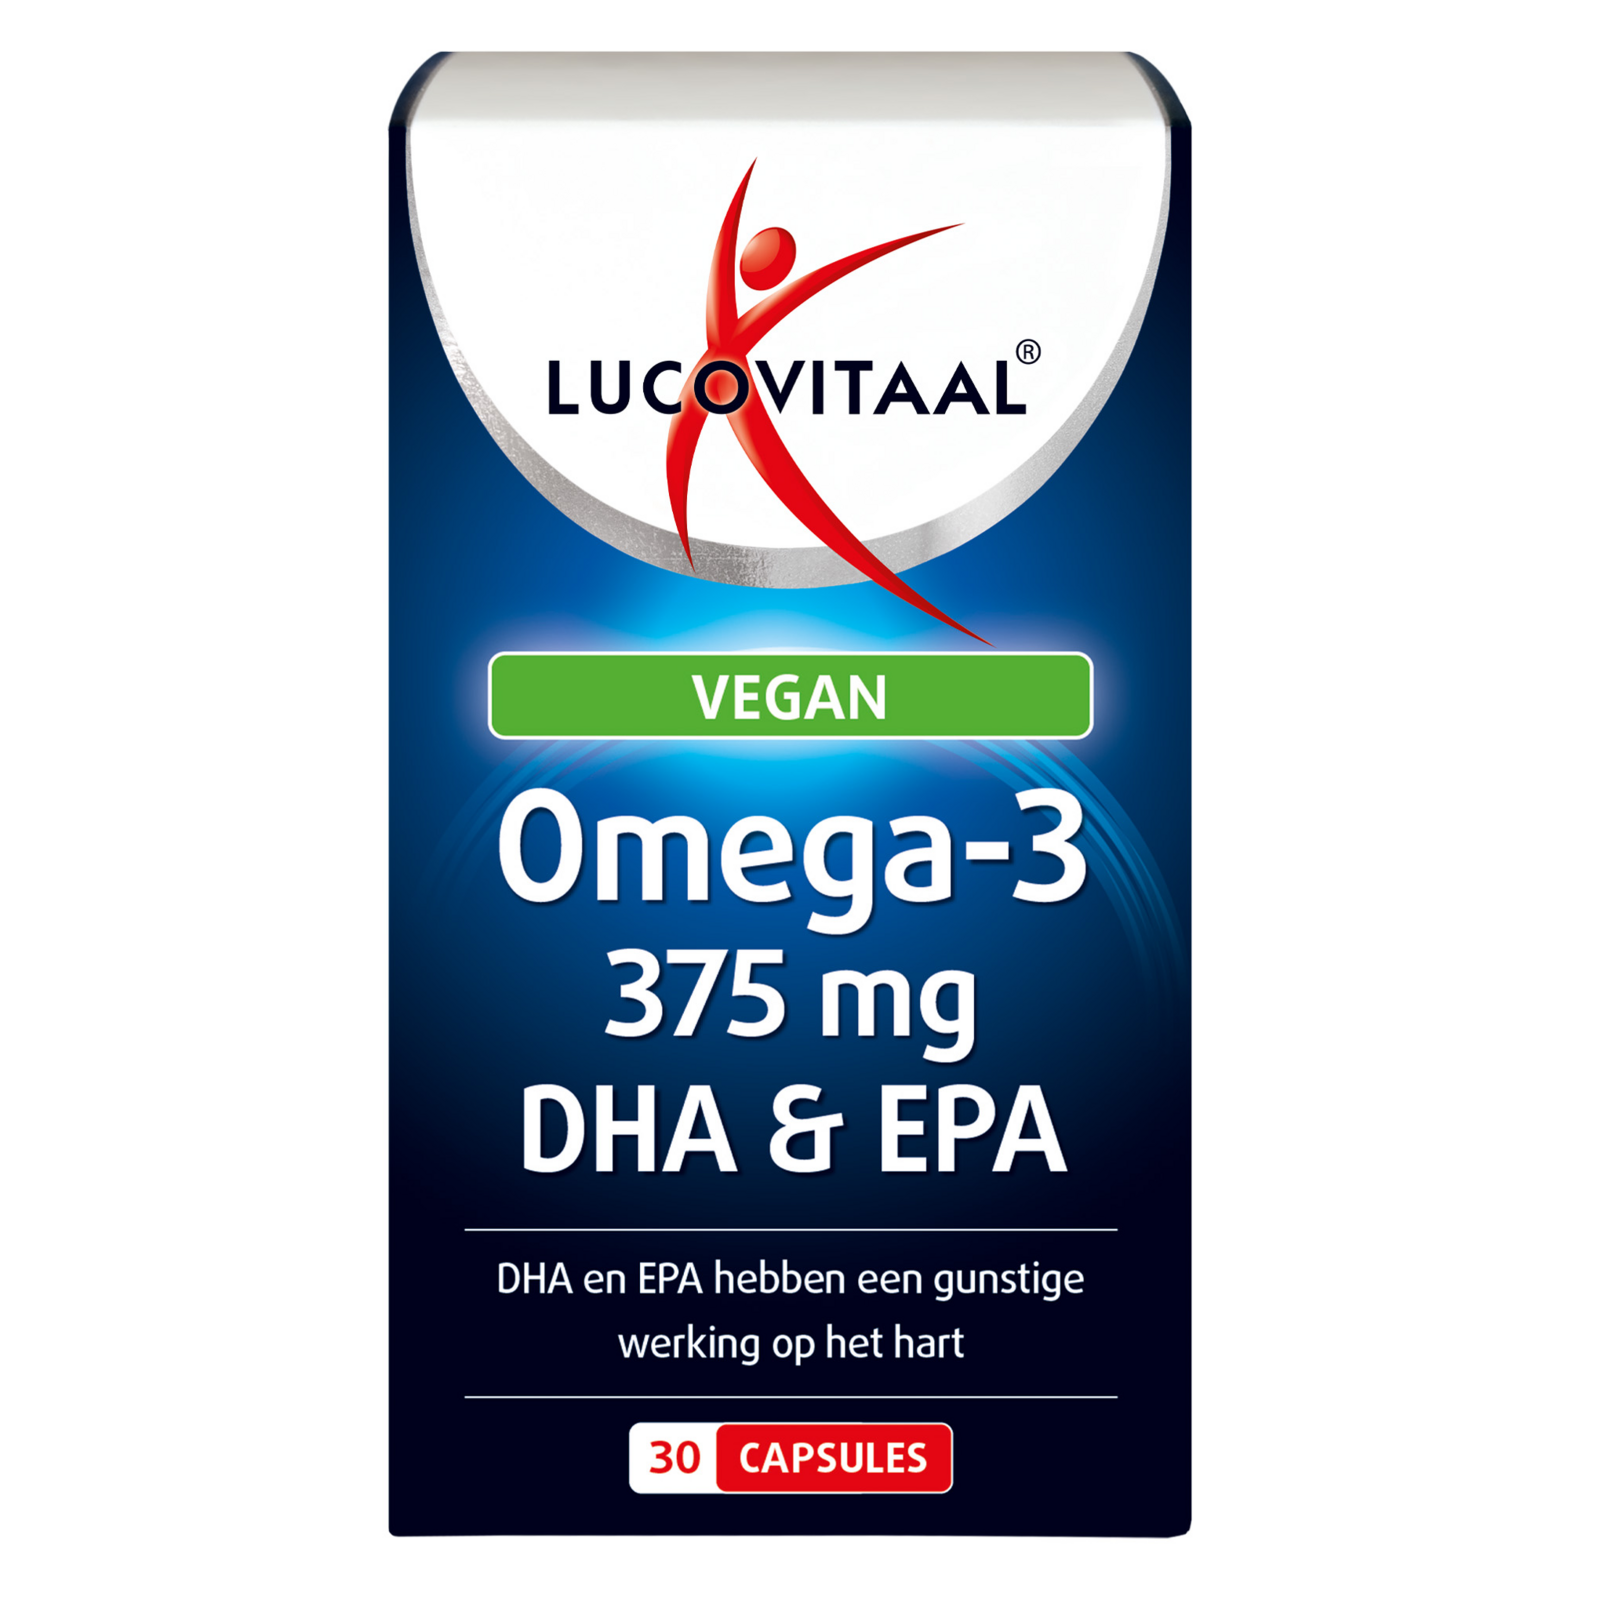 Afbeelding van Lucovitaal Omega-3 Vegan 375mg DHA & EPA Capsules